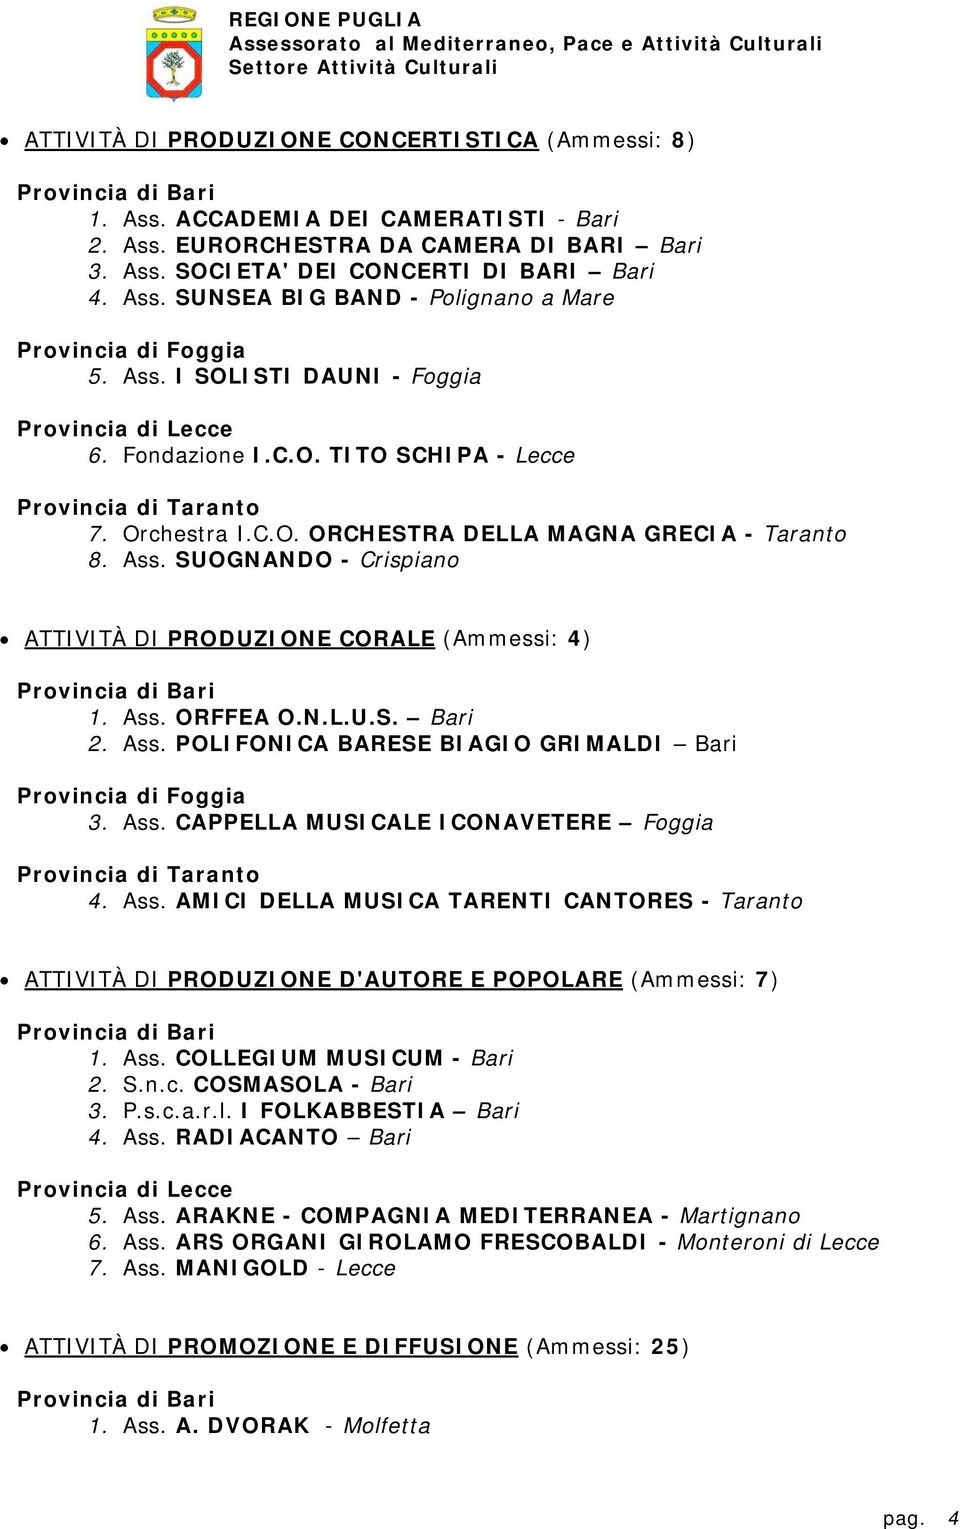 SUOGNANDO - Crispiano ATTIVITÀ DI PRODUZIONE CORALE (Ammessi: 4) 1. Ass. ORFFEA O.N.L.U.S. Bari 2. Ass. POLIFONICA BARESE BIAGIO GRIMALDI Bari 3. Ass. CAPPELLA MUSICALE ICONAVETERE Foggia 4. Ass. AMICI DELLA MUSICA TARENTI CANTORES - Taranto ATTIVITÀ DI PRODUZIONE D'AUTORE E POPOLARE (Ammessi: 7) 1.